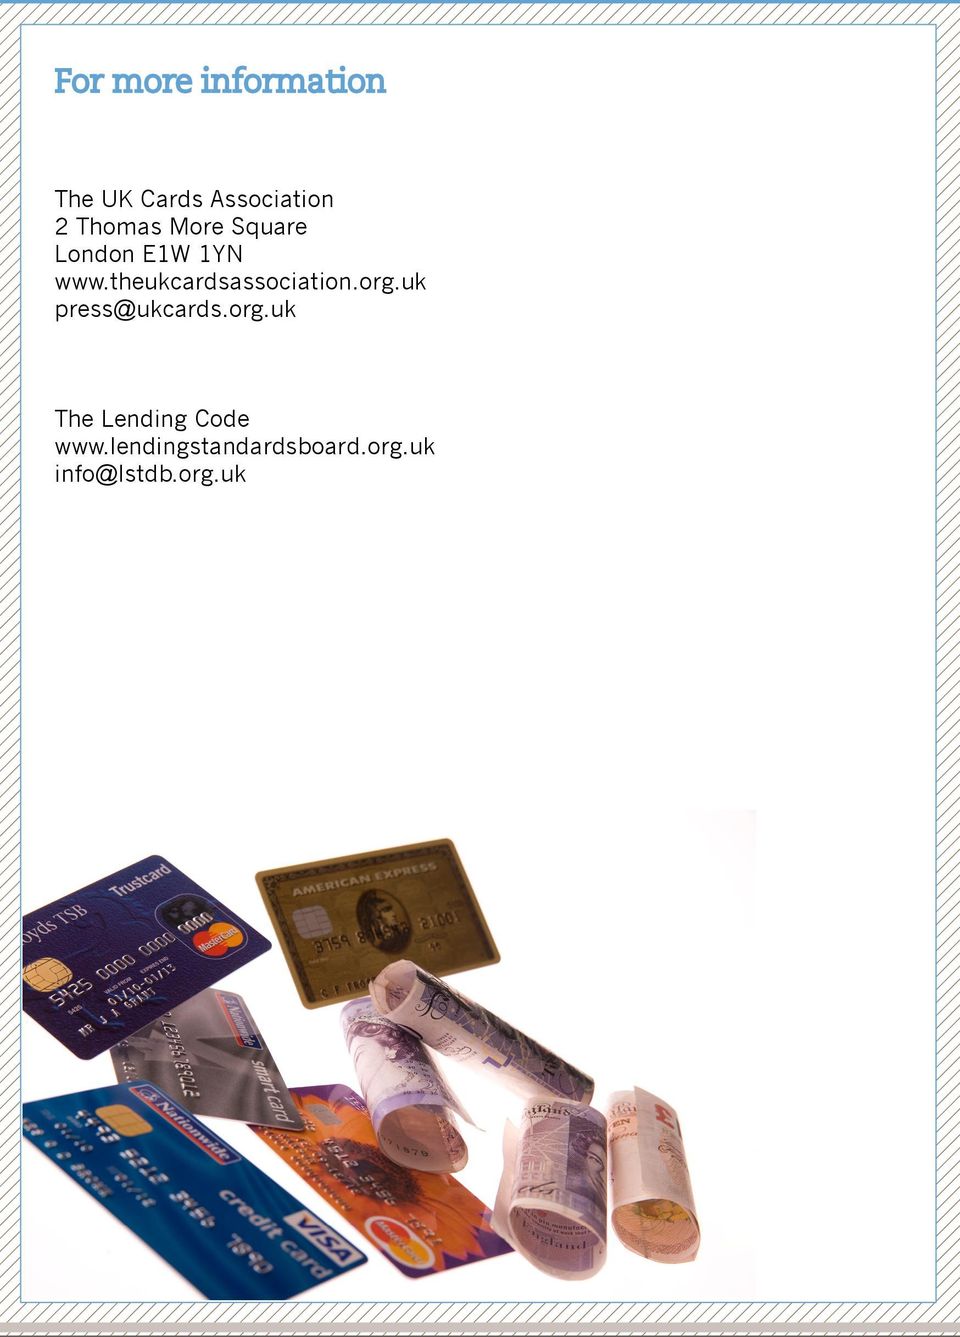 theukcardsassociation.org.uk press@ukcards.org.uk The Lending Code www.